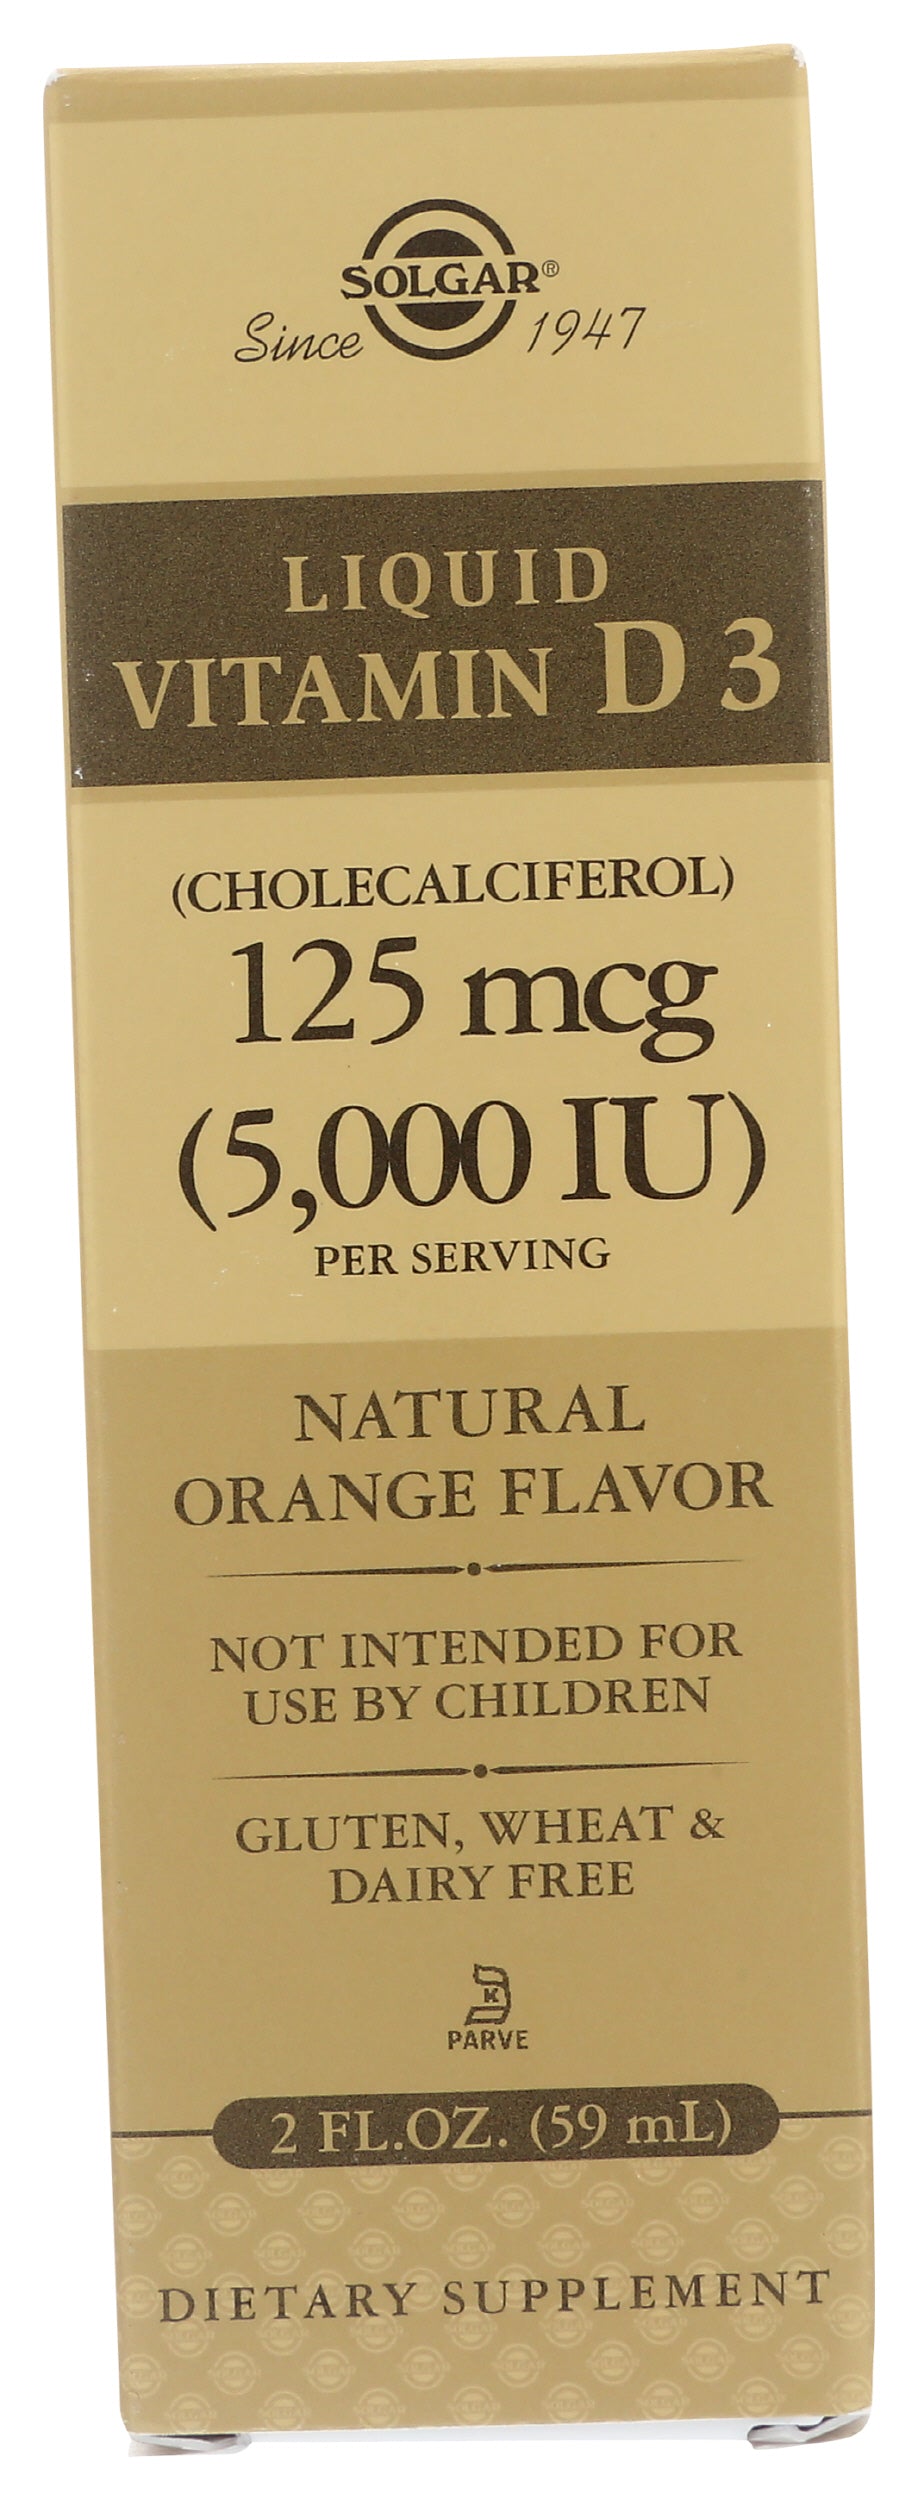 Solgar Liquid Vitamin D3 5,000 IU 2 fl oz Front of Box